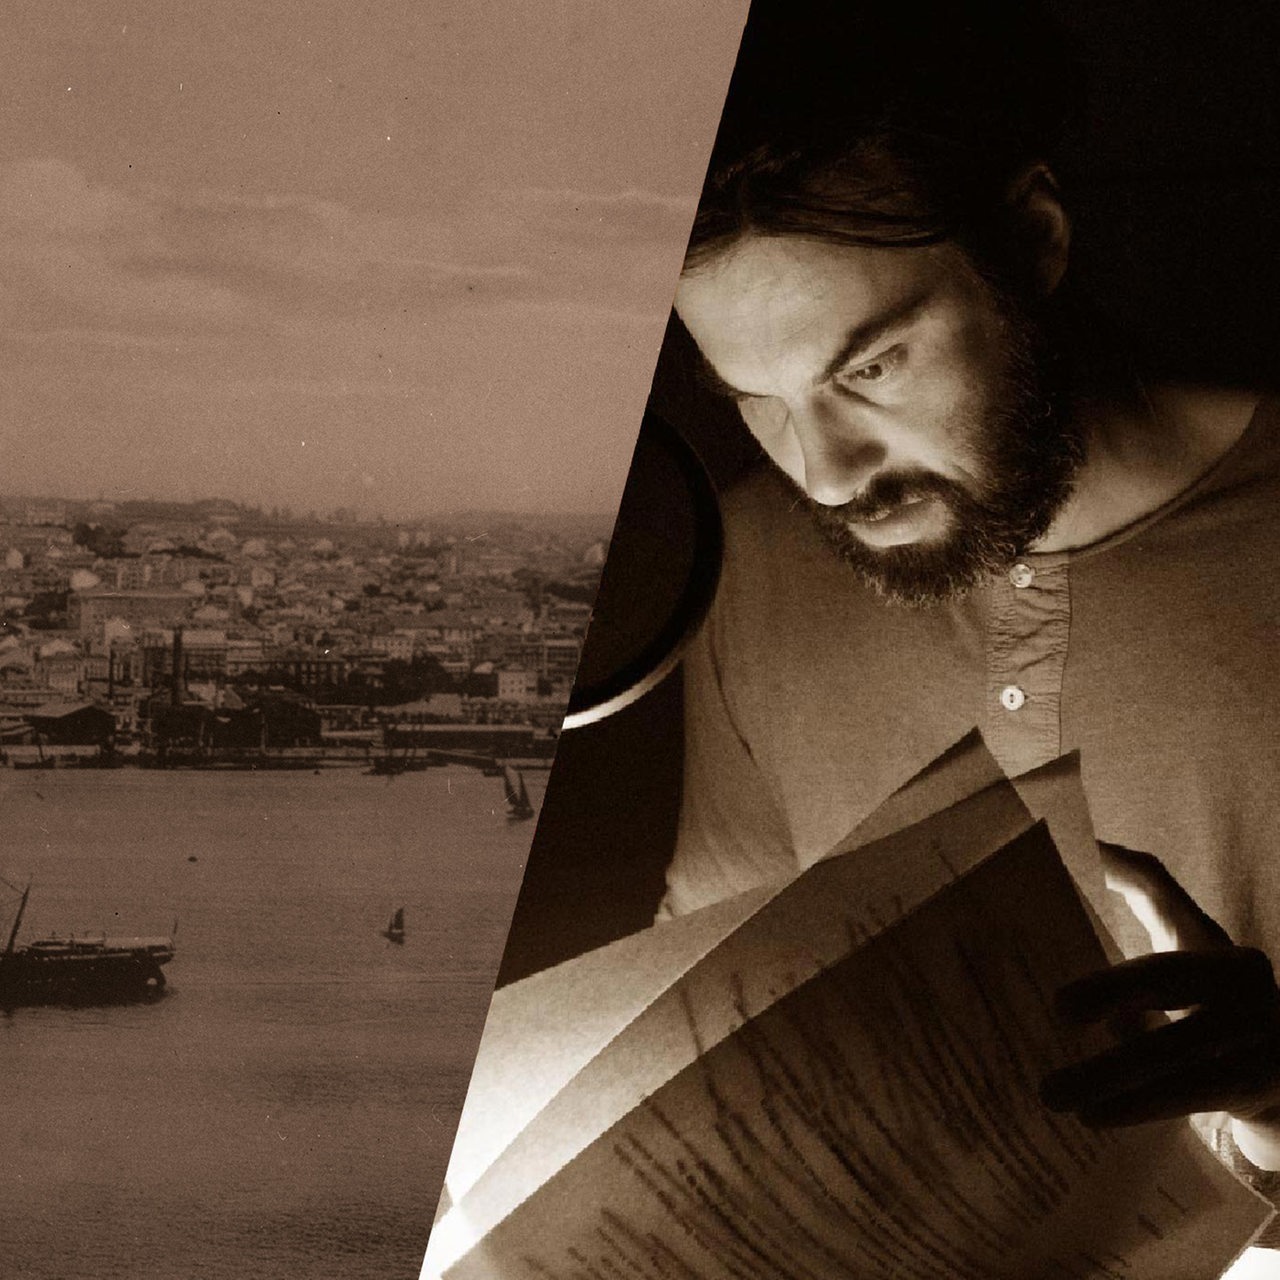 Schauspieler Max Simonschek neben einem Foto vom Hafen Lissabon.